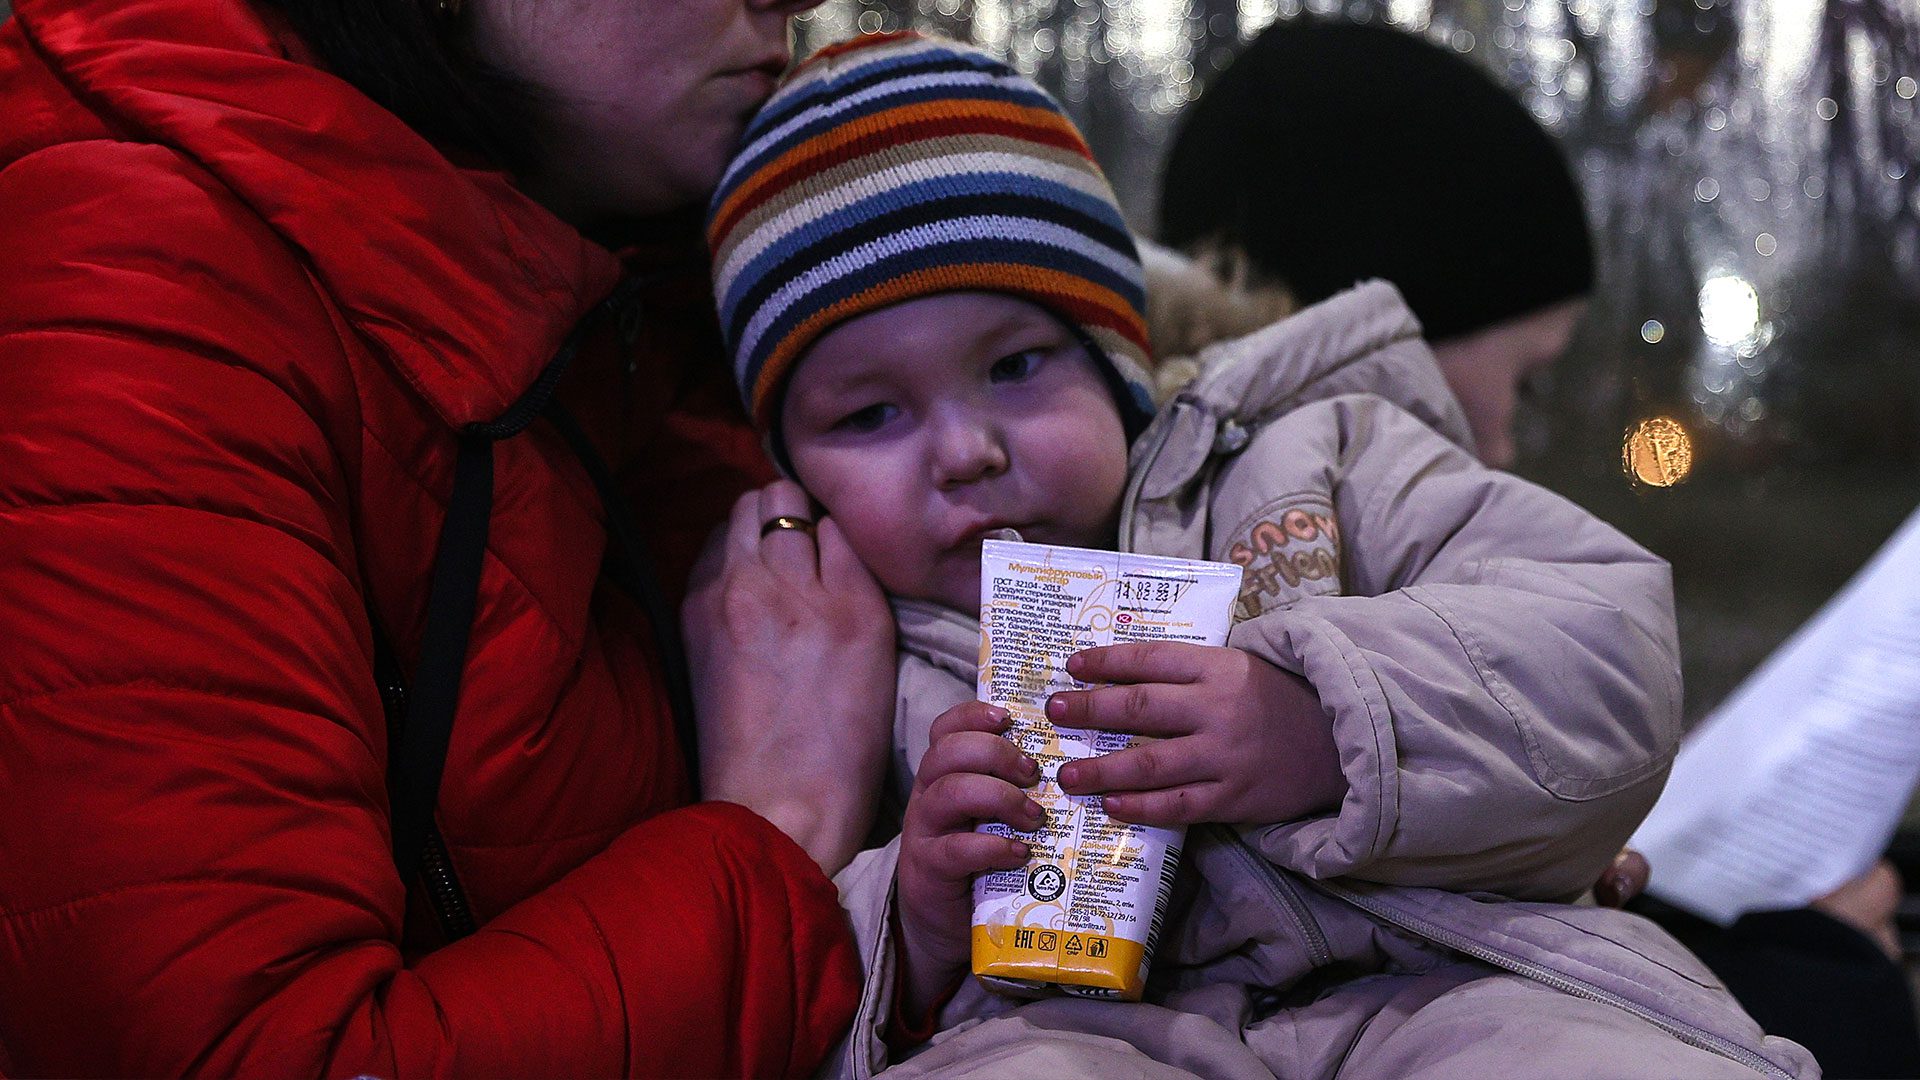 حرب أوكرانيا تحول طفلا واحدا إلى لاجئ كل ثانية اوكرانيا